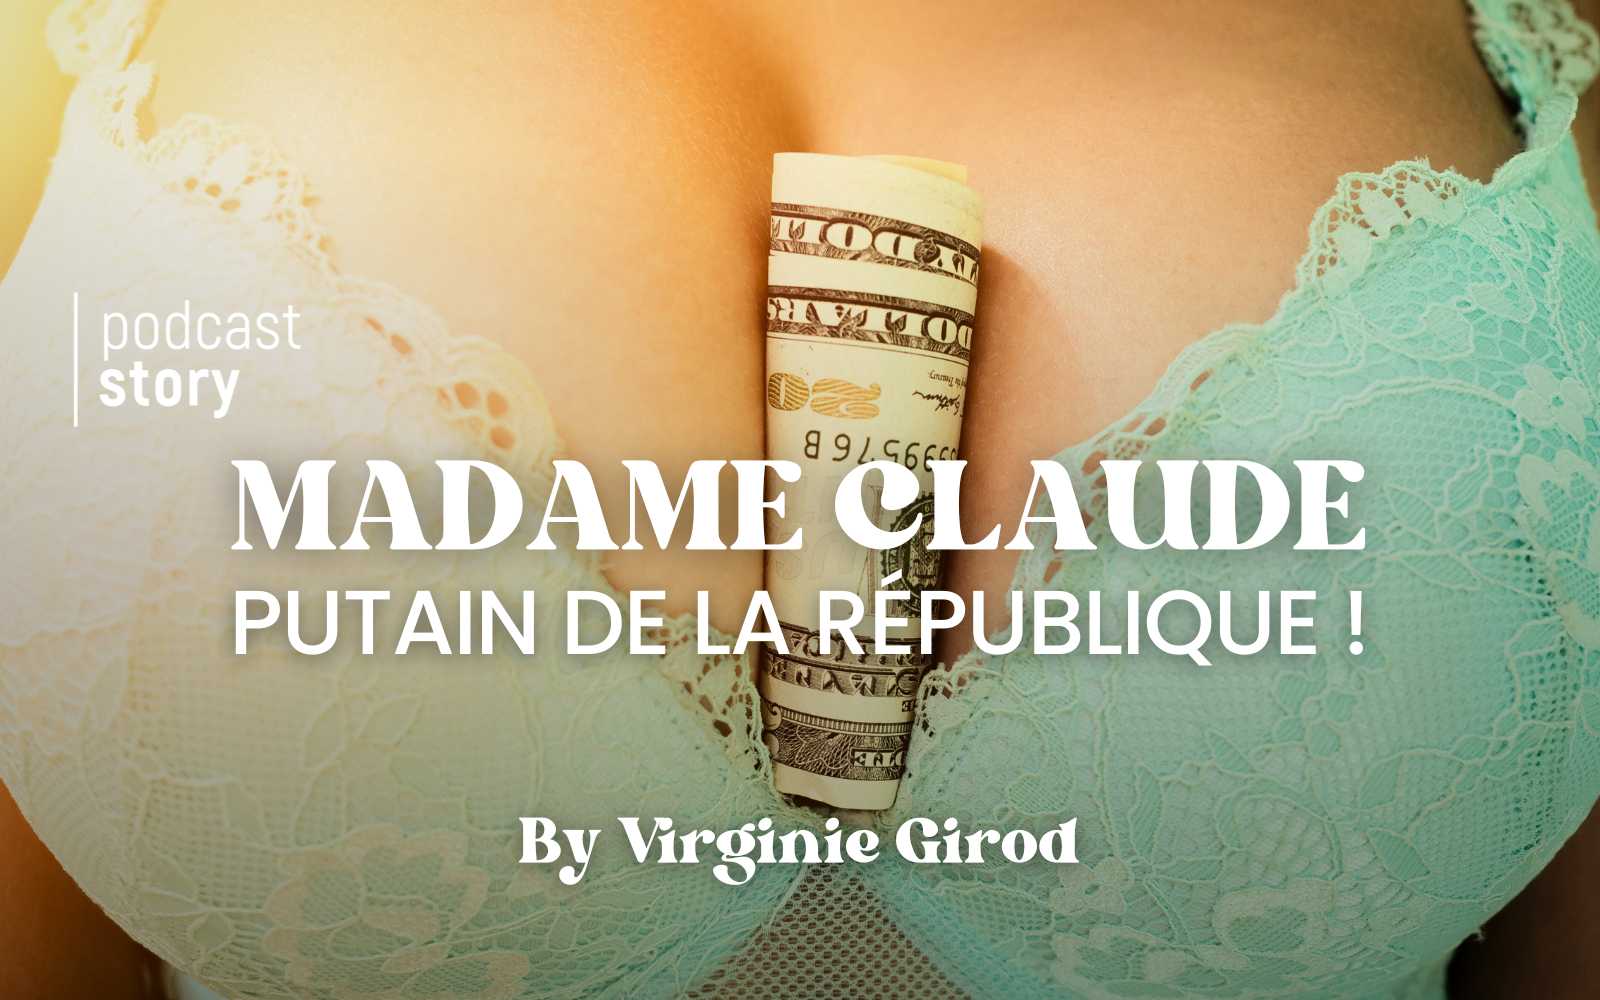 MADAME CLAUDE, PUTAIN DE LA RÉPUBLIQUE !